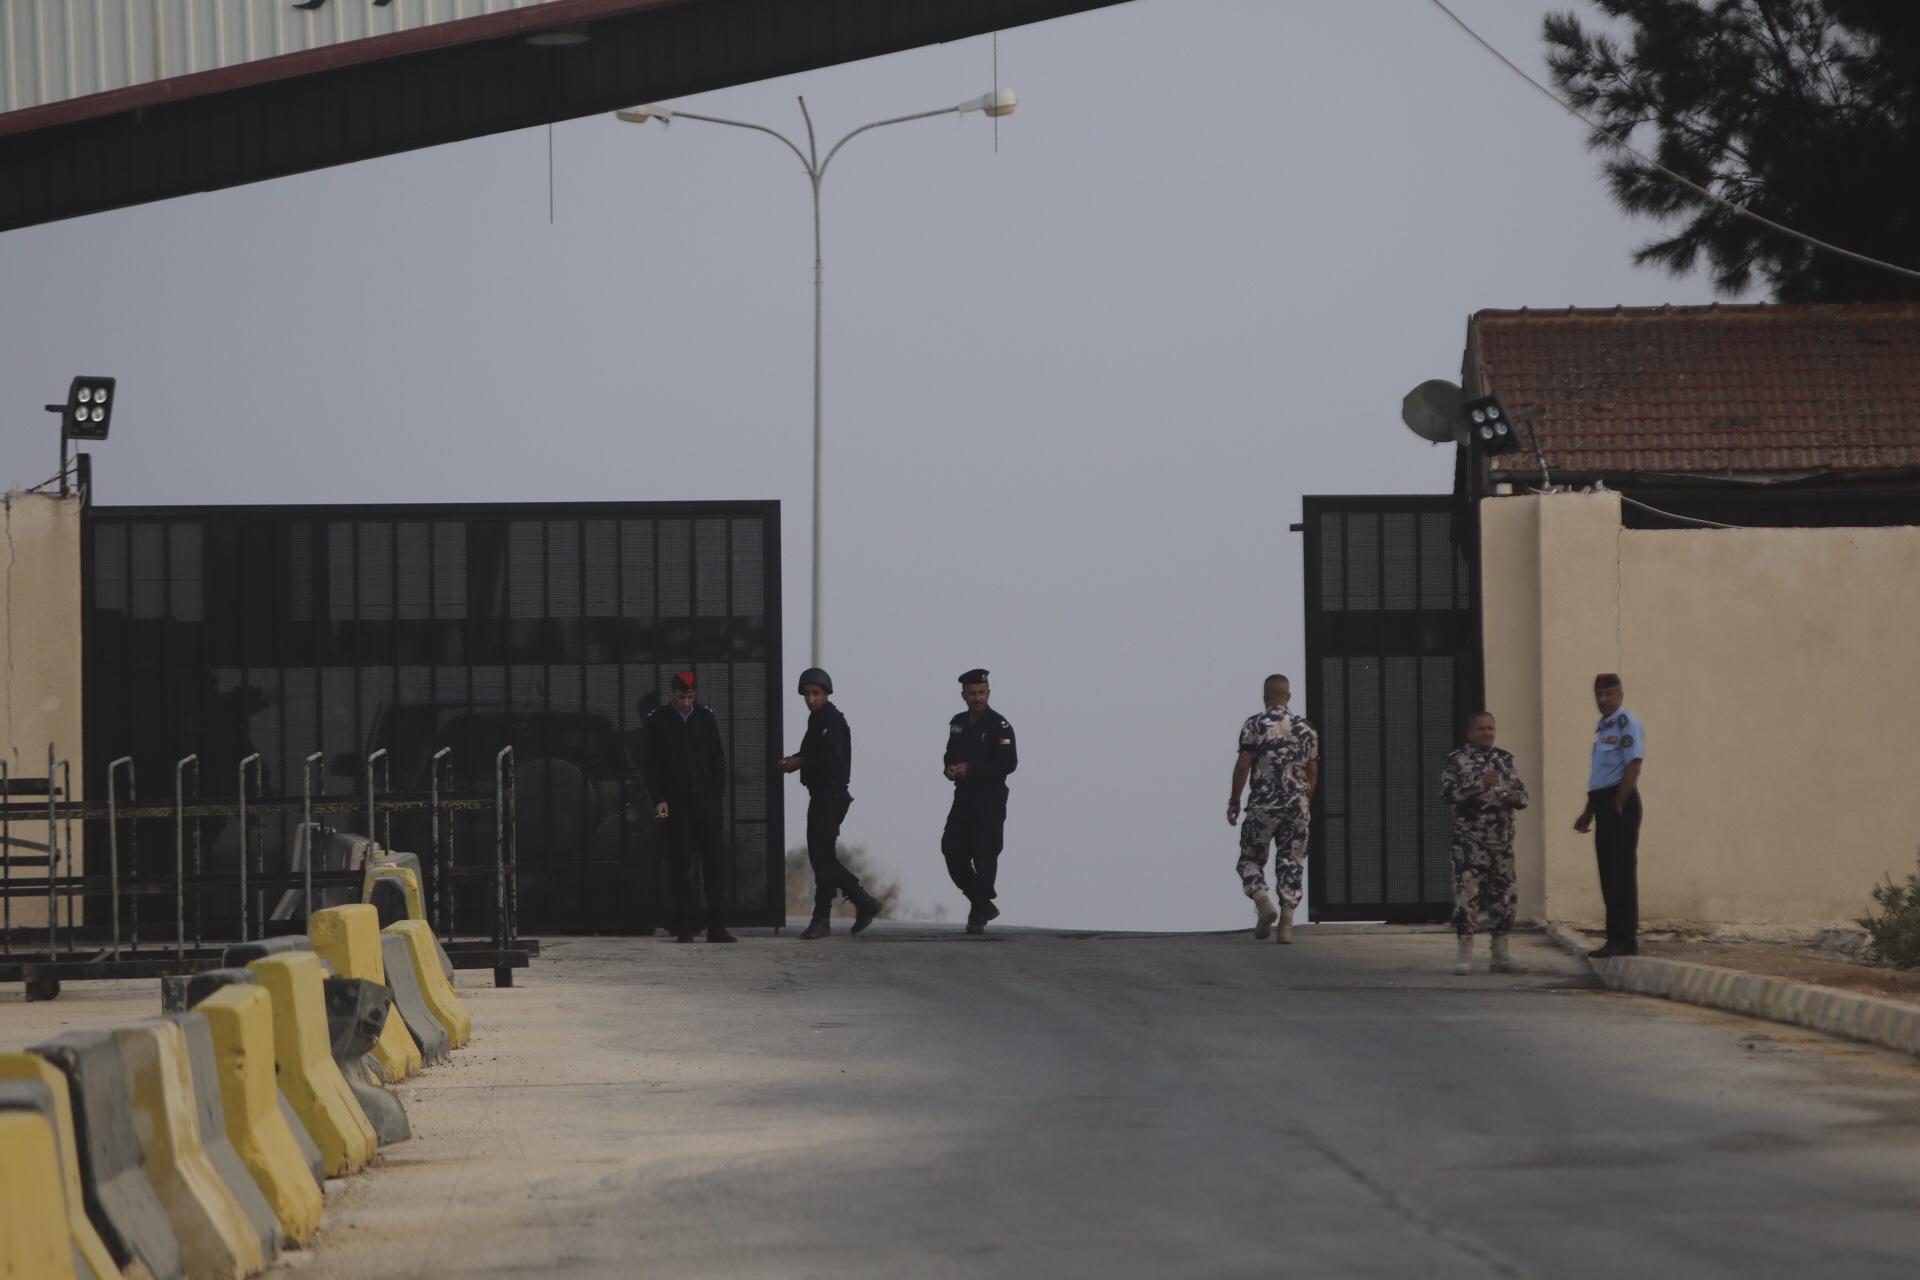 مجموعة من أفراد أمن يفتحون البوابة الرئيسية لمعبر جابر الحدودي شمالي الأردني باتجاه سوريا. صلاح ملكاوي/ المملكة